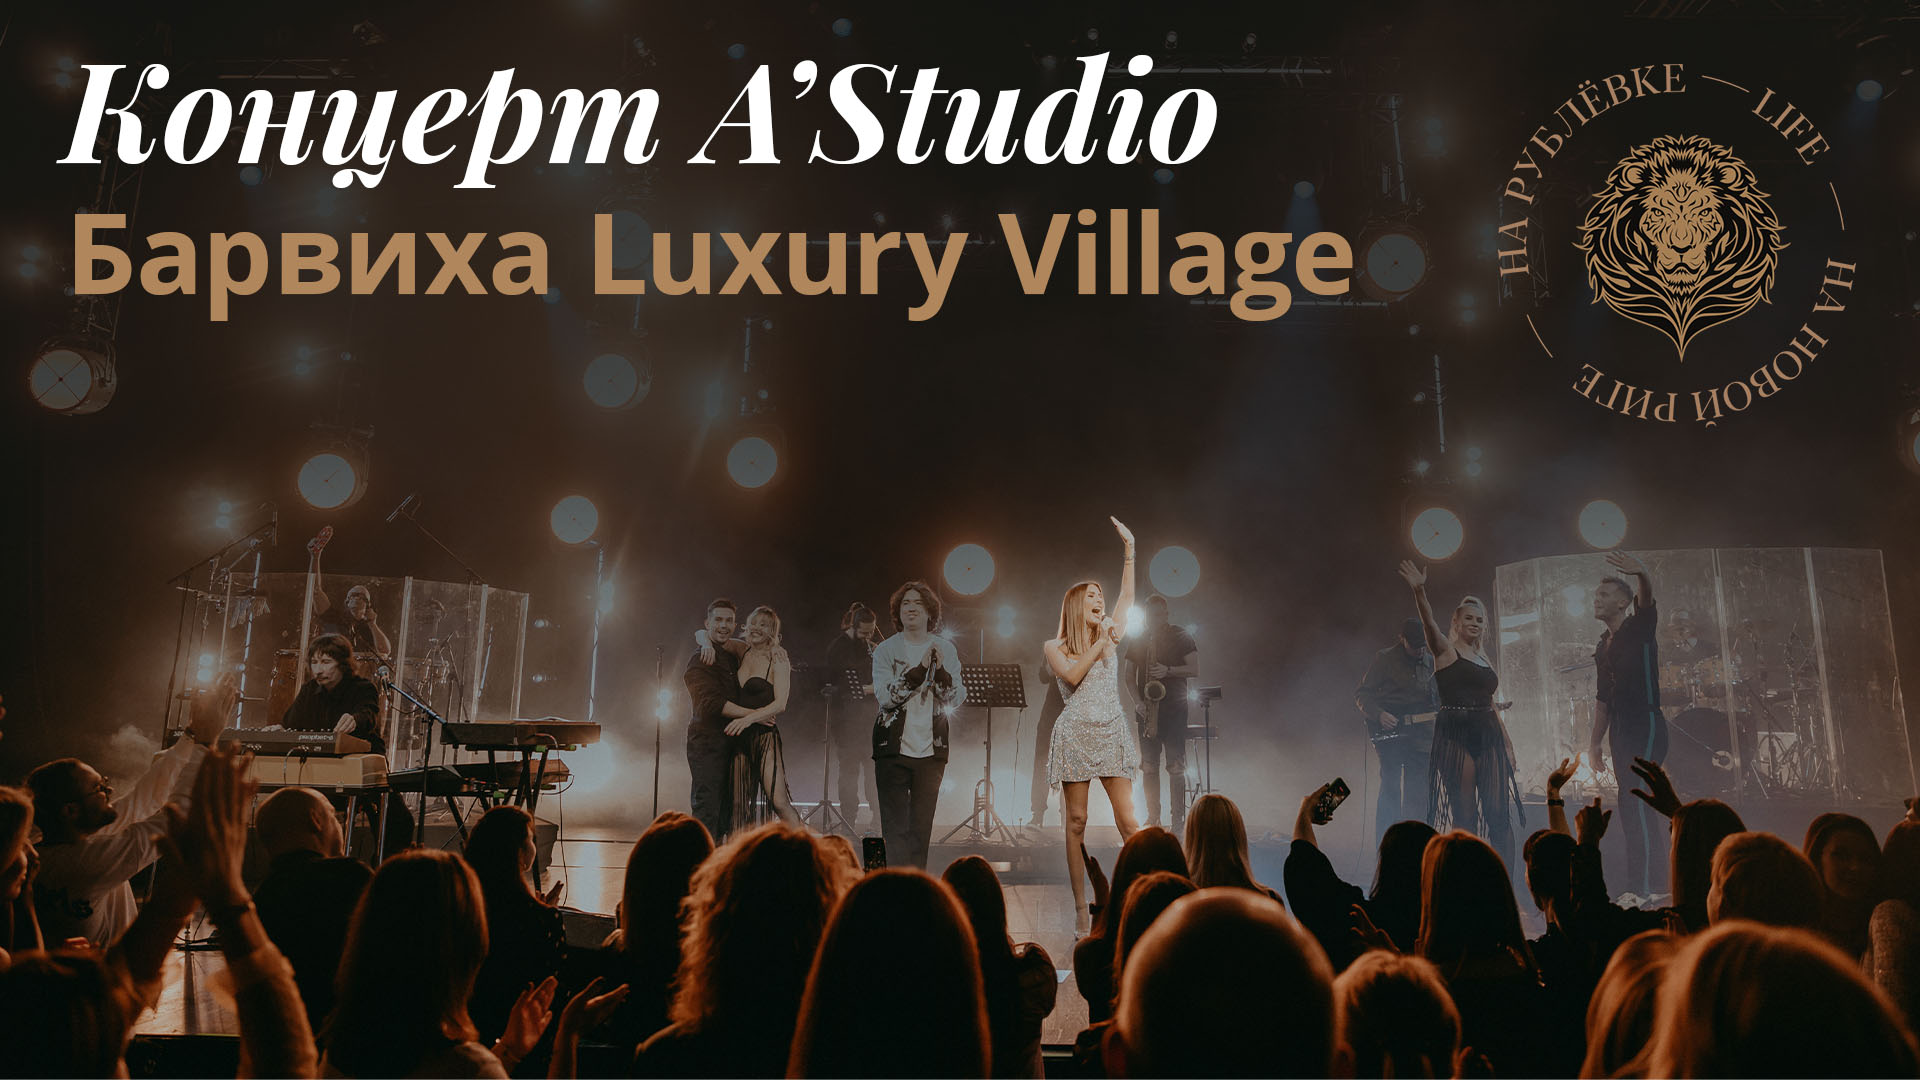 Репортаж с концерта A'Studio в Барвихе Luxury Village